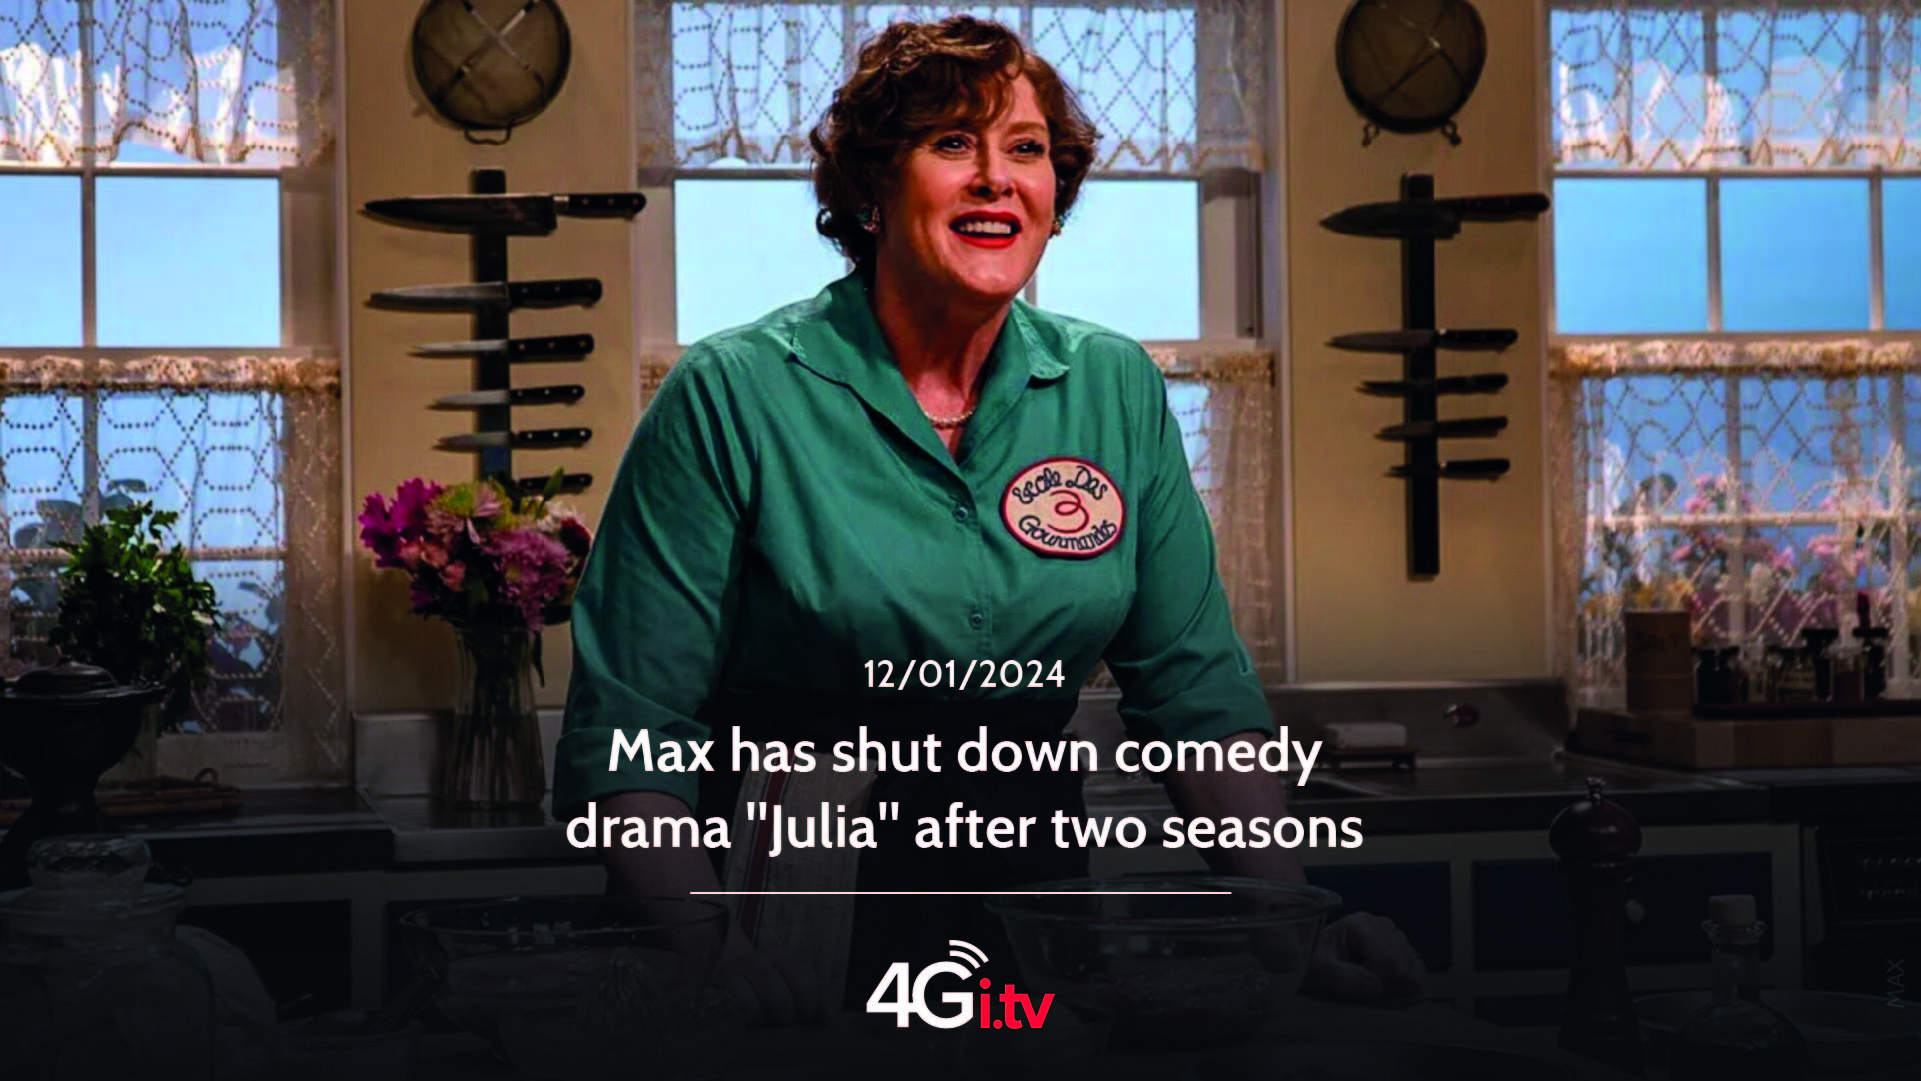 Lesen Sie mehr über den Artikel Max has shut down comedy drama “Julia” after two seasons 